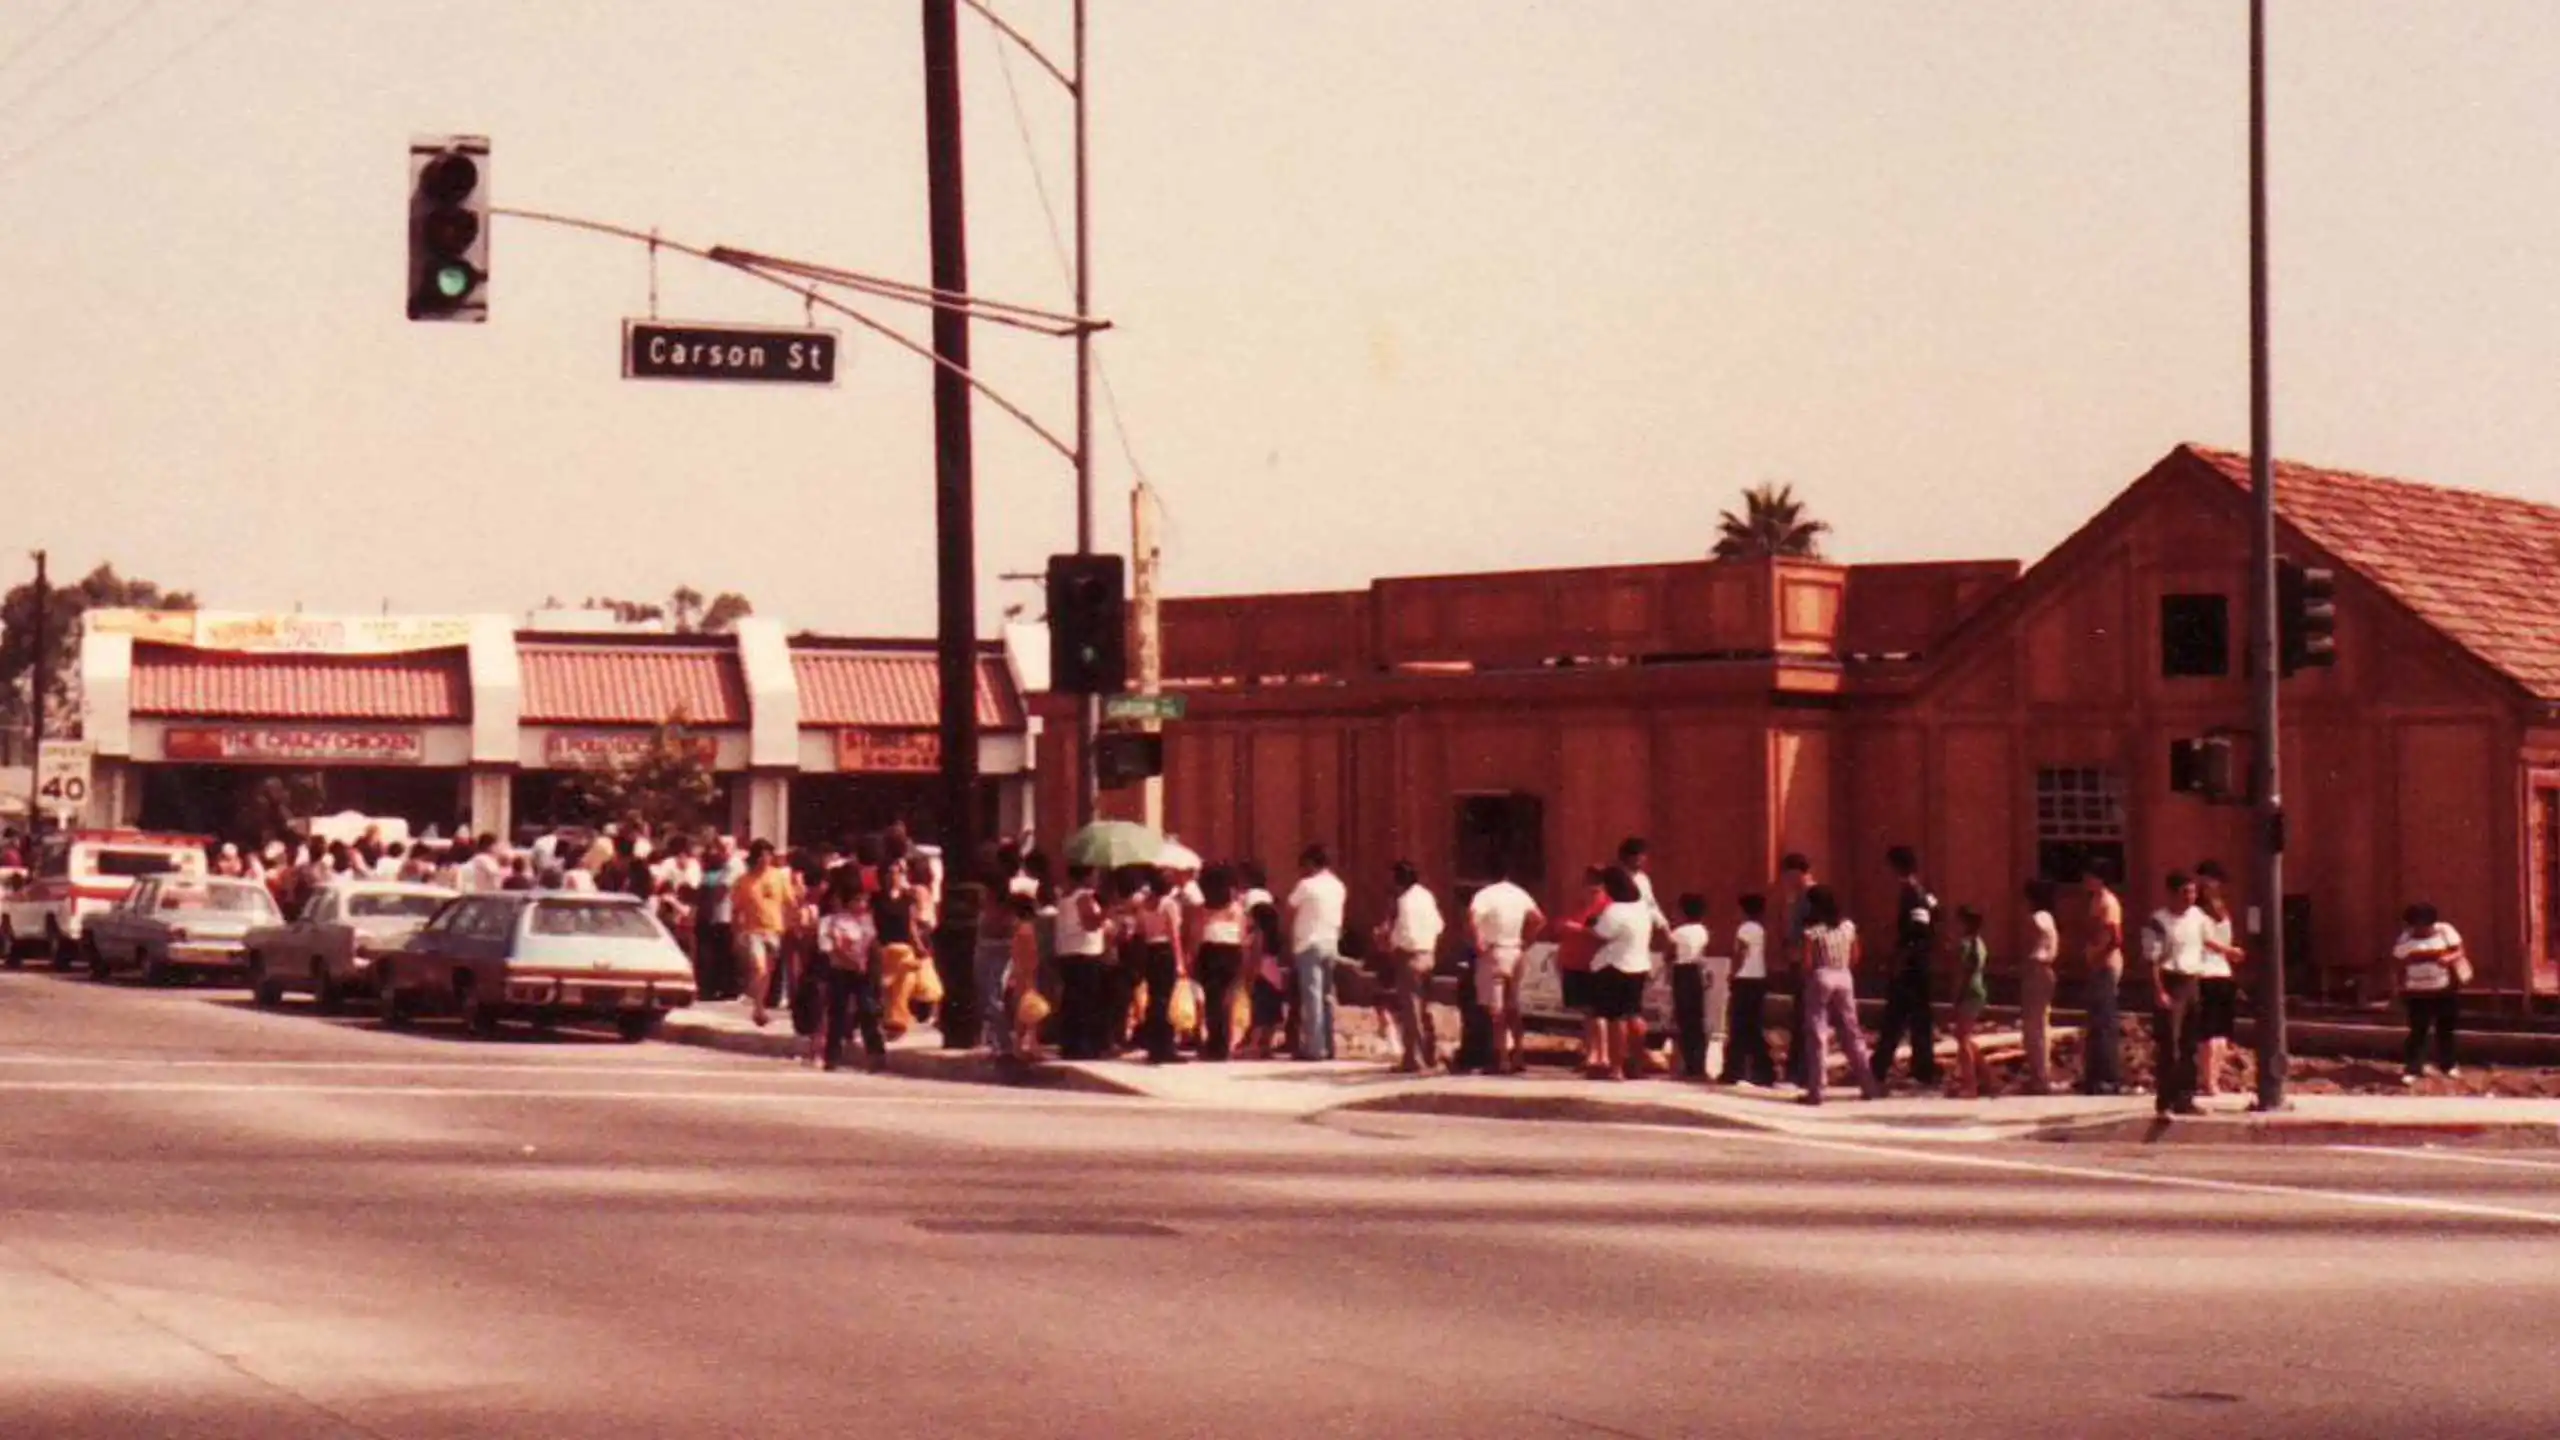 La fila de personas buscando comer el Pollo Loco en la primera sucursal de Los Ángeles, California.